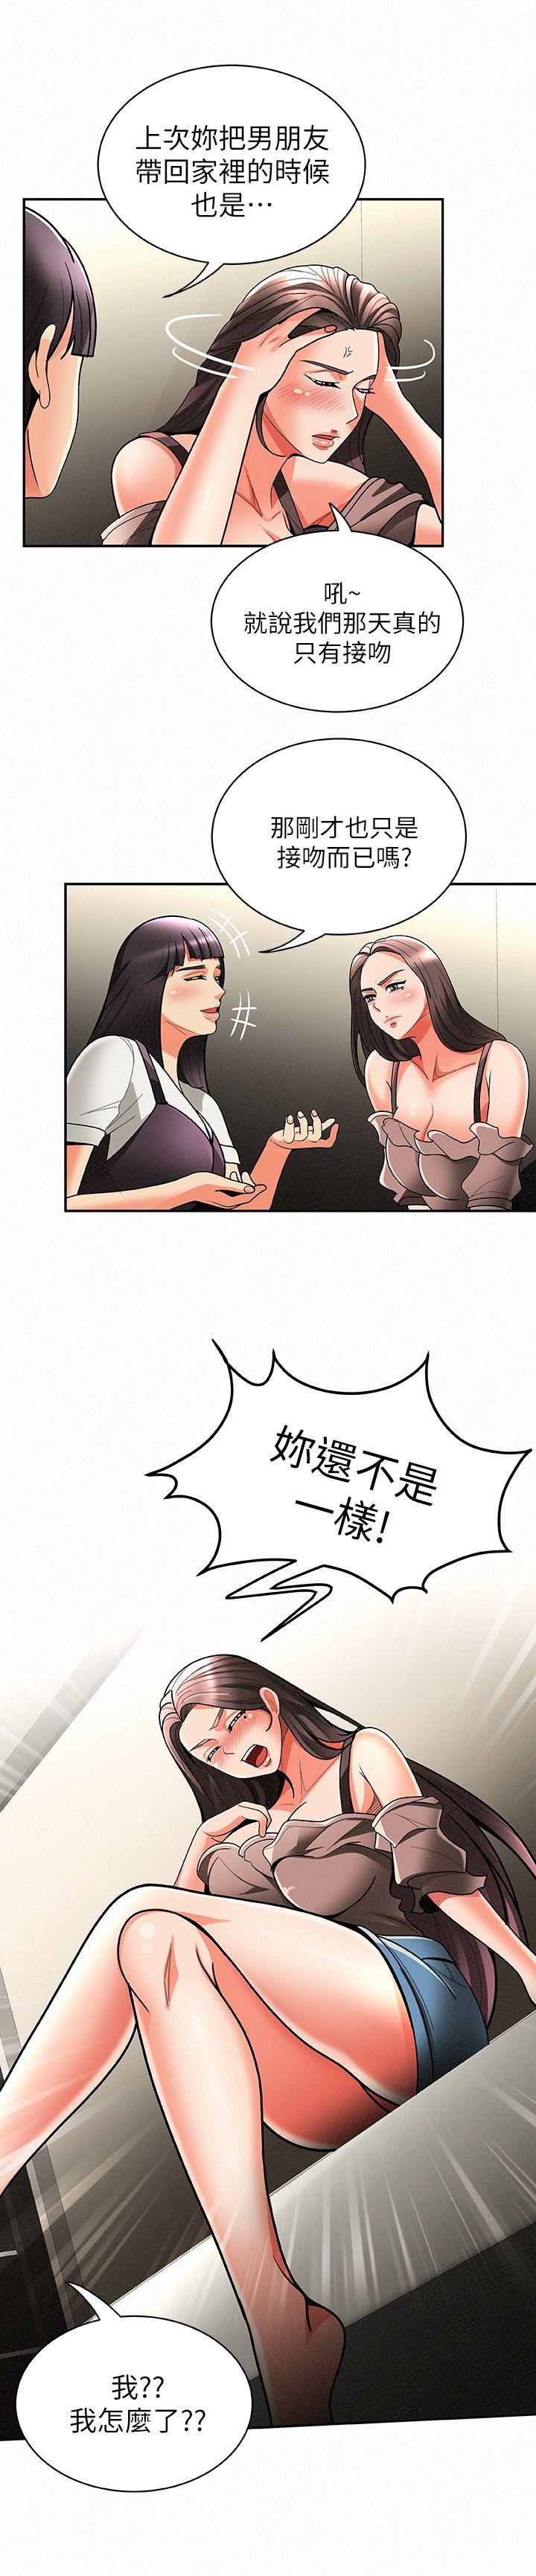 韩国污漫画 報告夫人 第7话-让姊姊也成为共犯 11